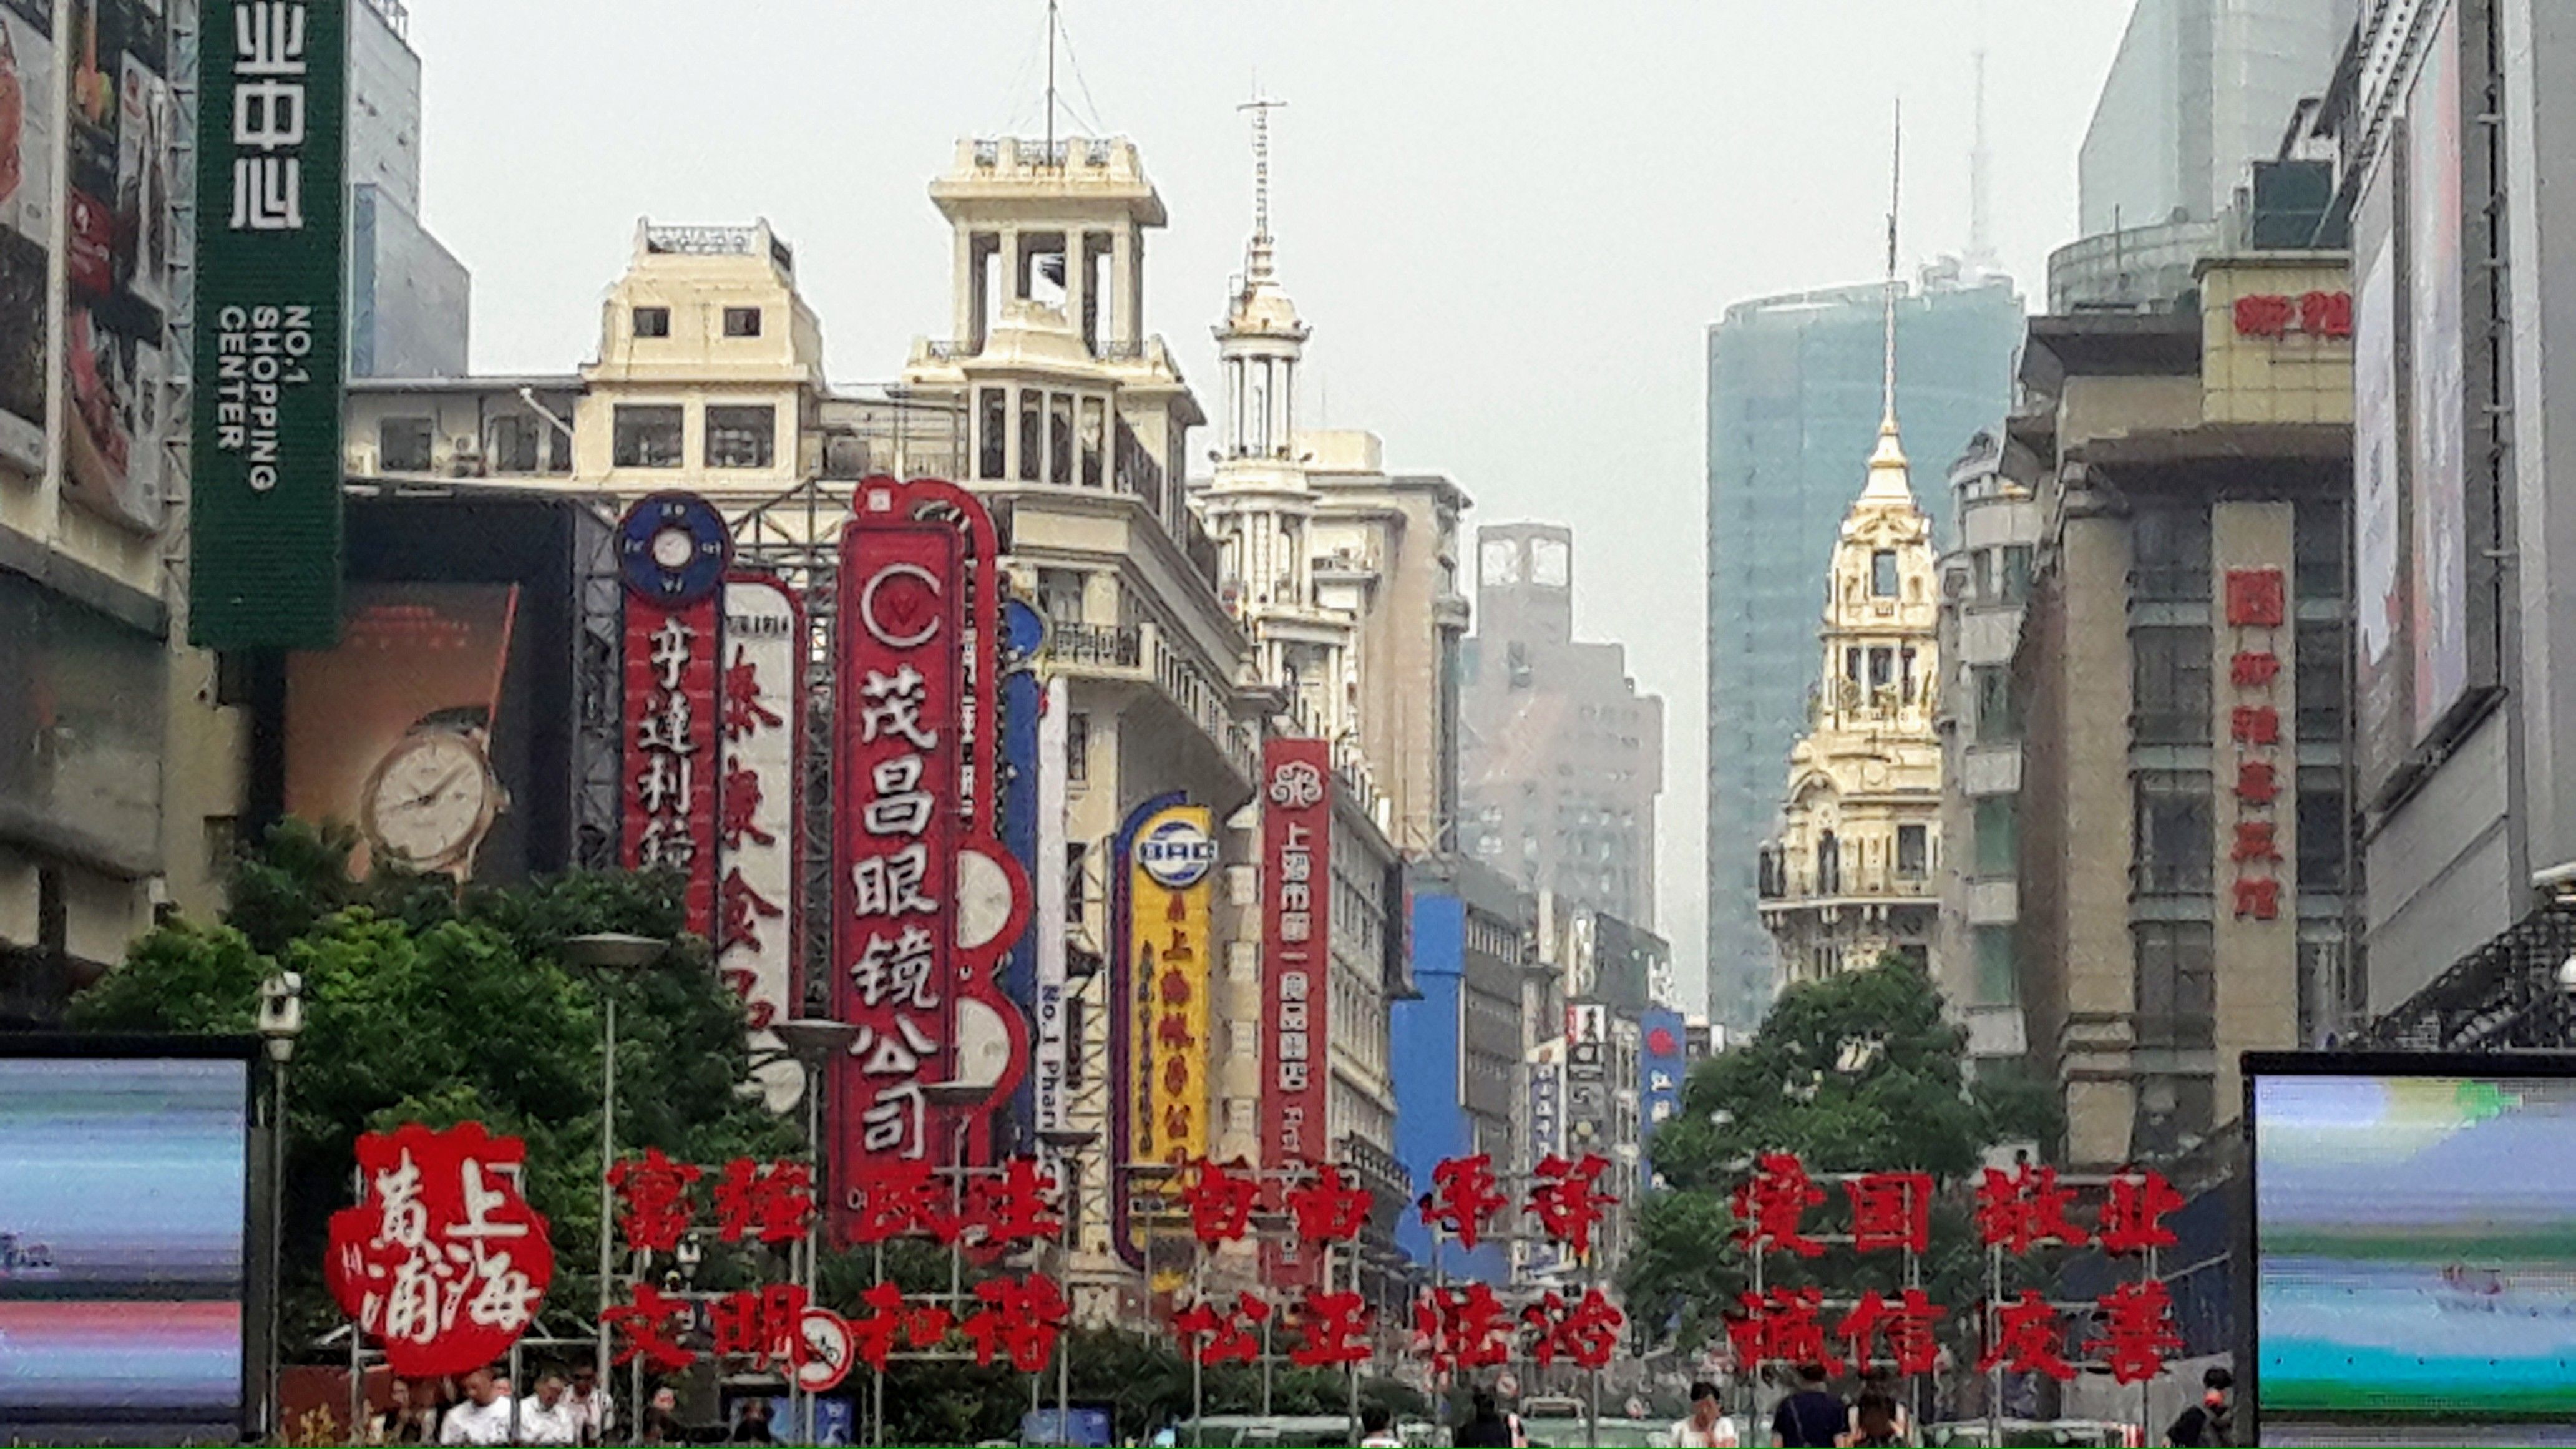 Regard sur Shanghai, artère place du Peuple